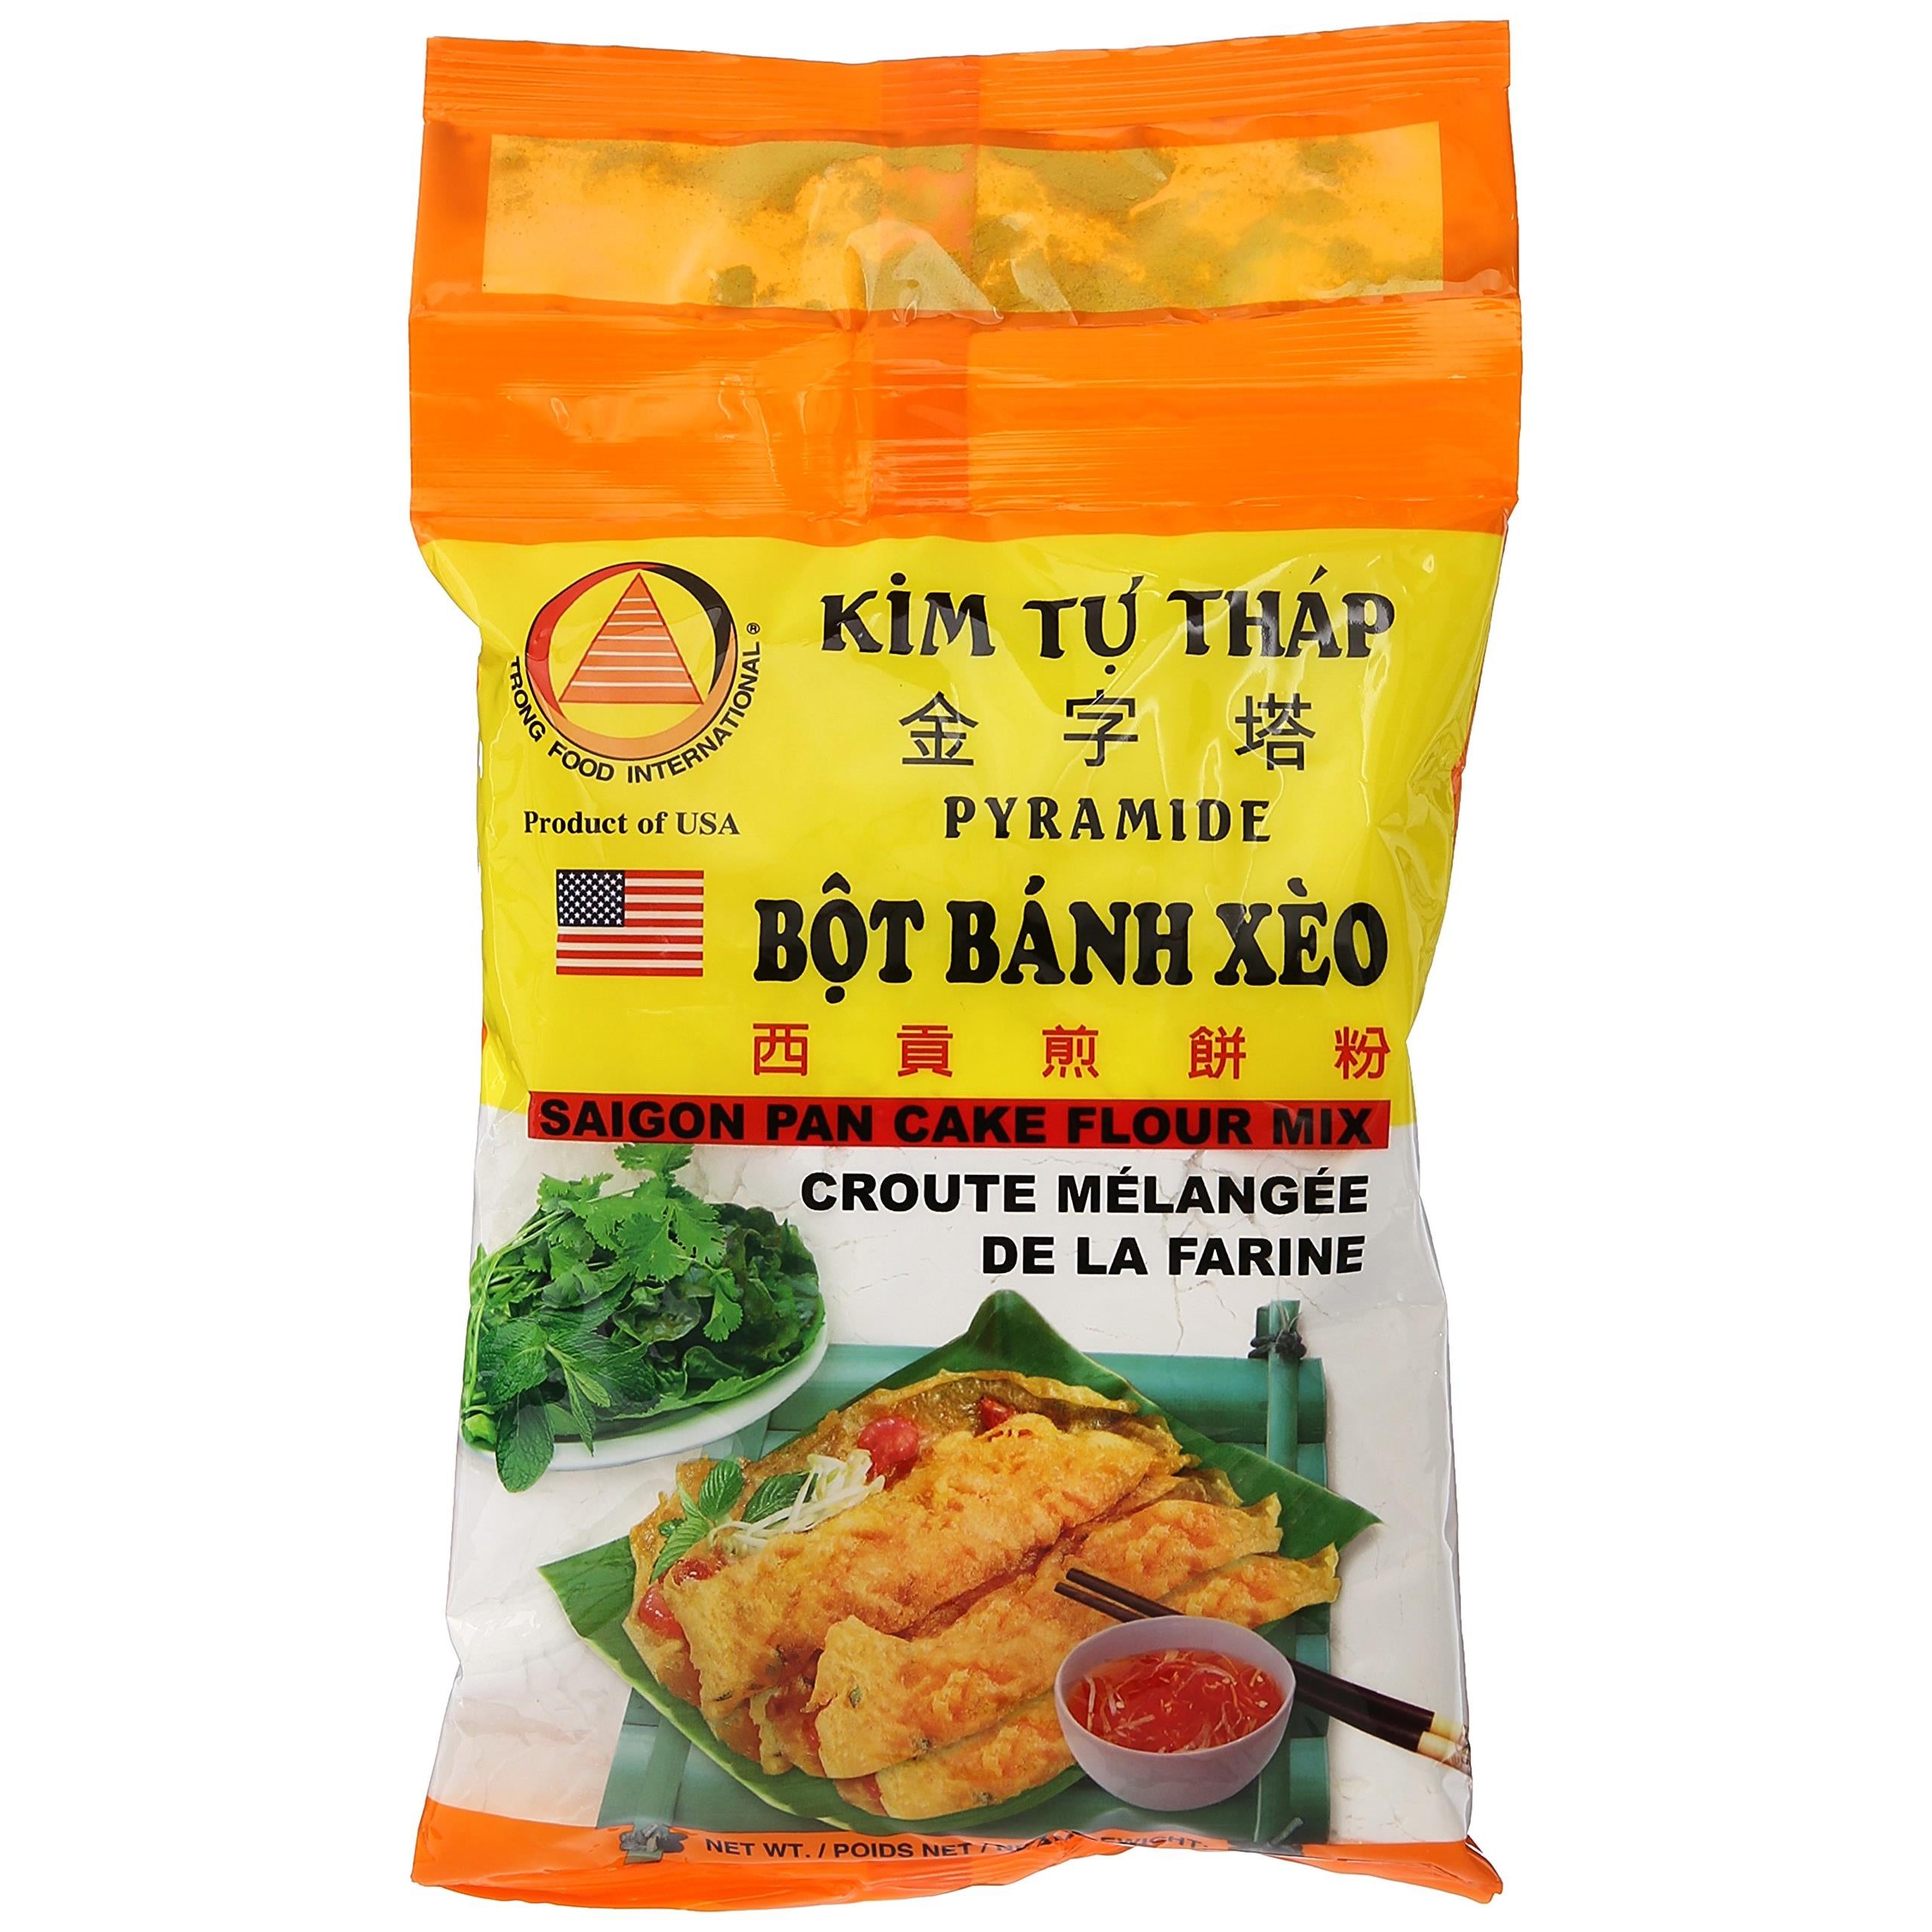 Vietnamese Pancake Flour Mix (Bot Banh Xeo) - 12 Oz.